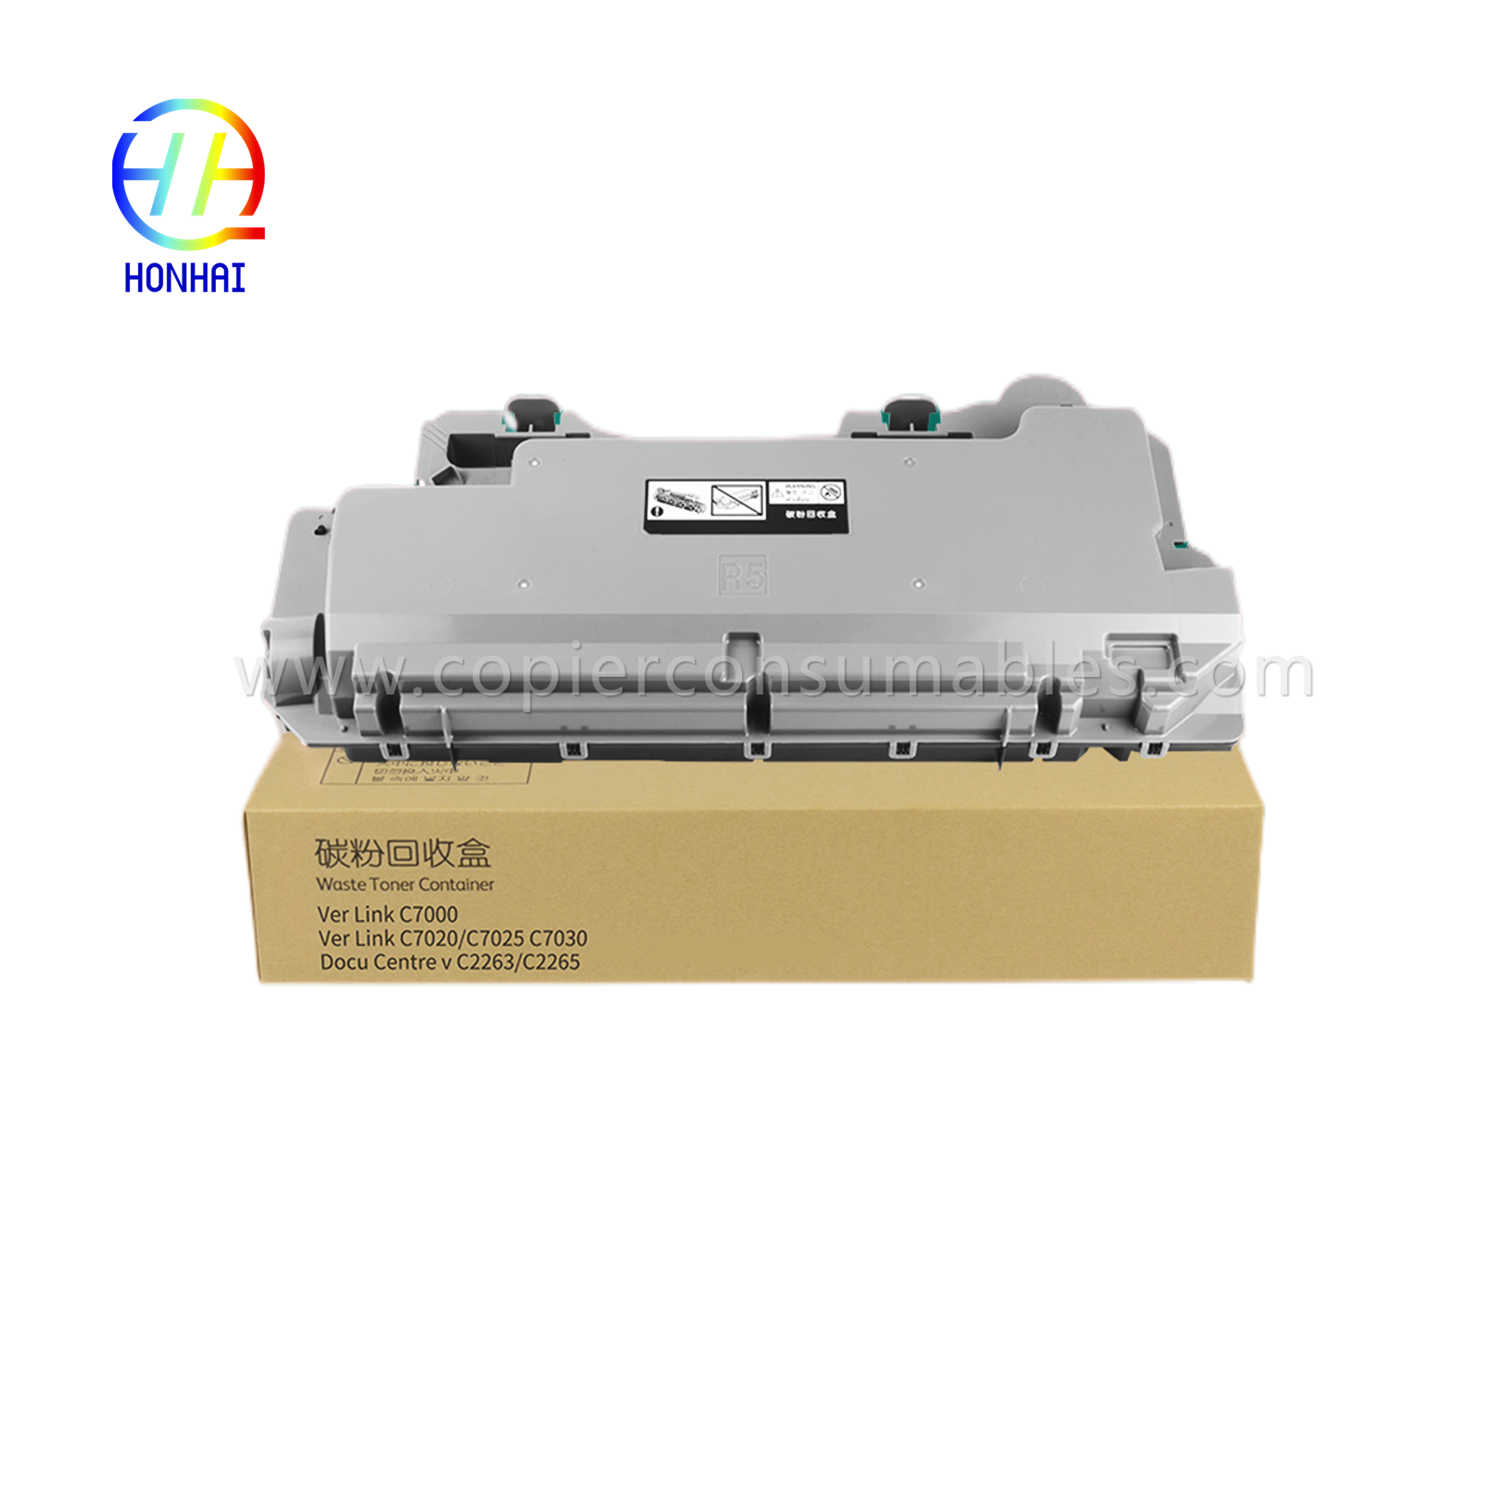 Avfallstonerbeholder for Xerox C7020 7025 7030 7120 7125 7130 115R00128 (1)